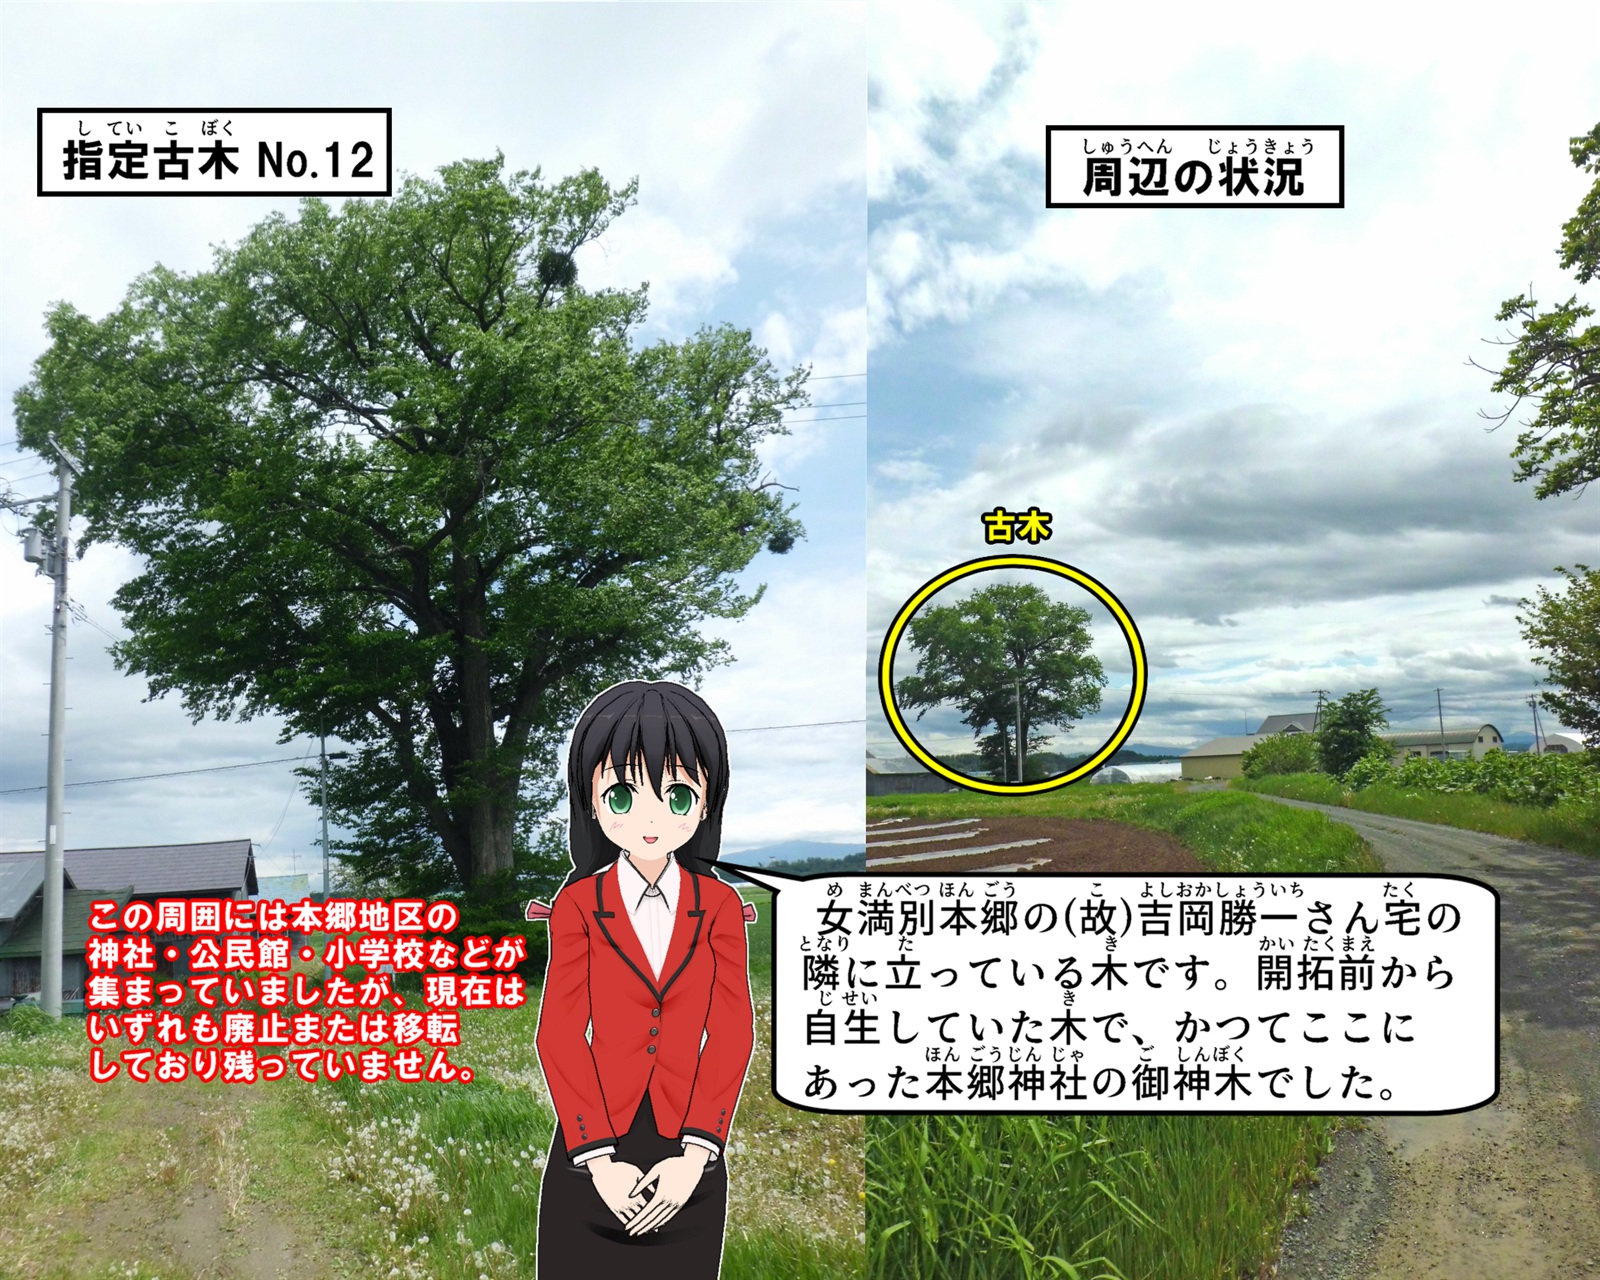 女満別本郷の故人吉岡勝一さん宅の隣に立っているハルニレの写真の説明をしているイラスト